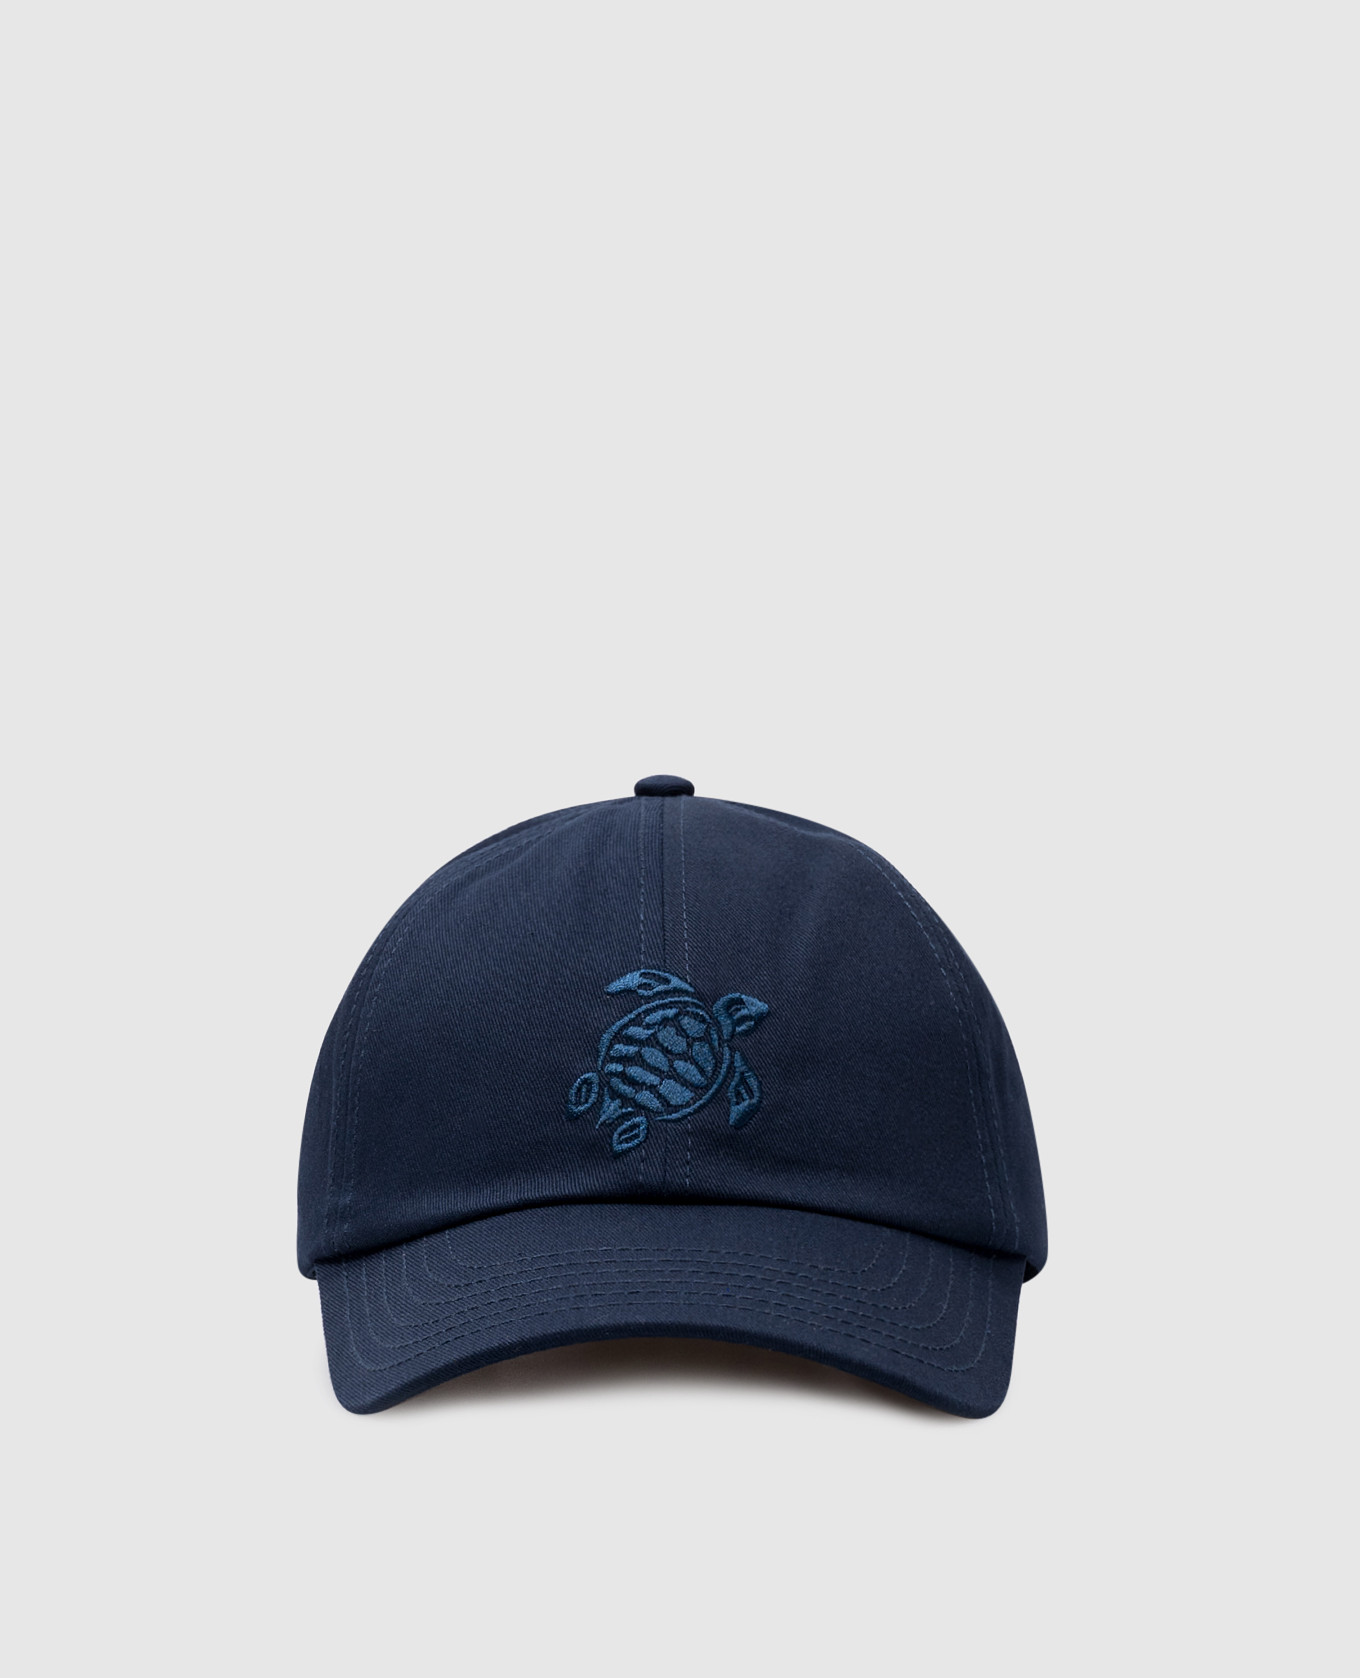 Capsun blue cap with logo